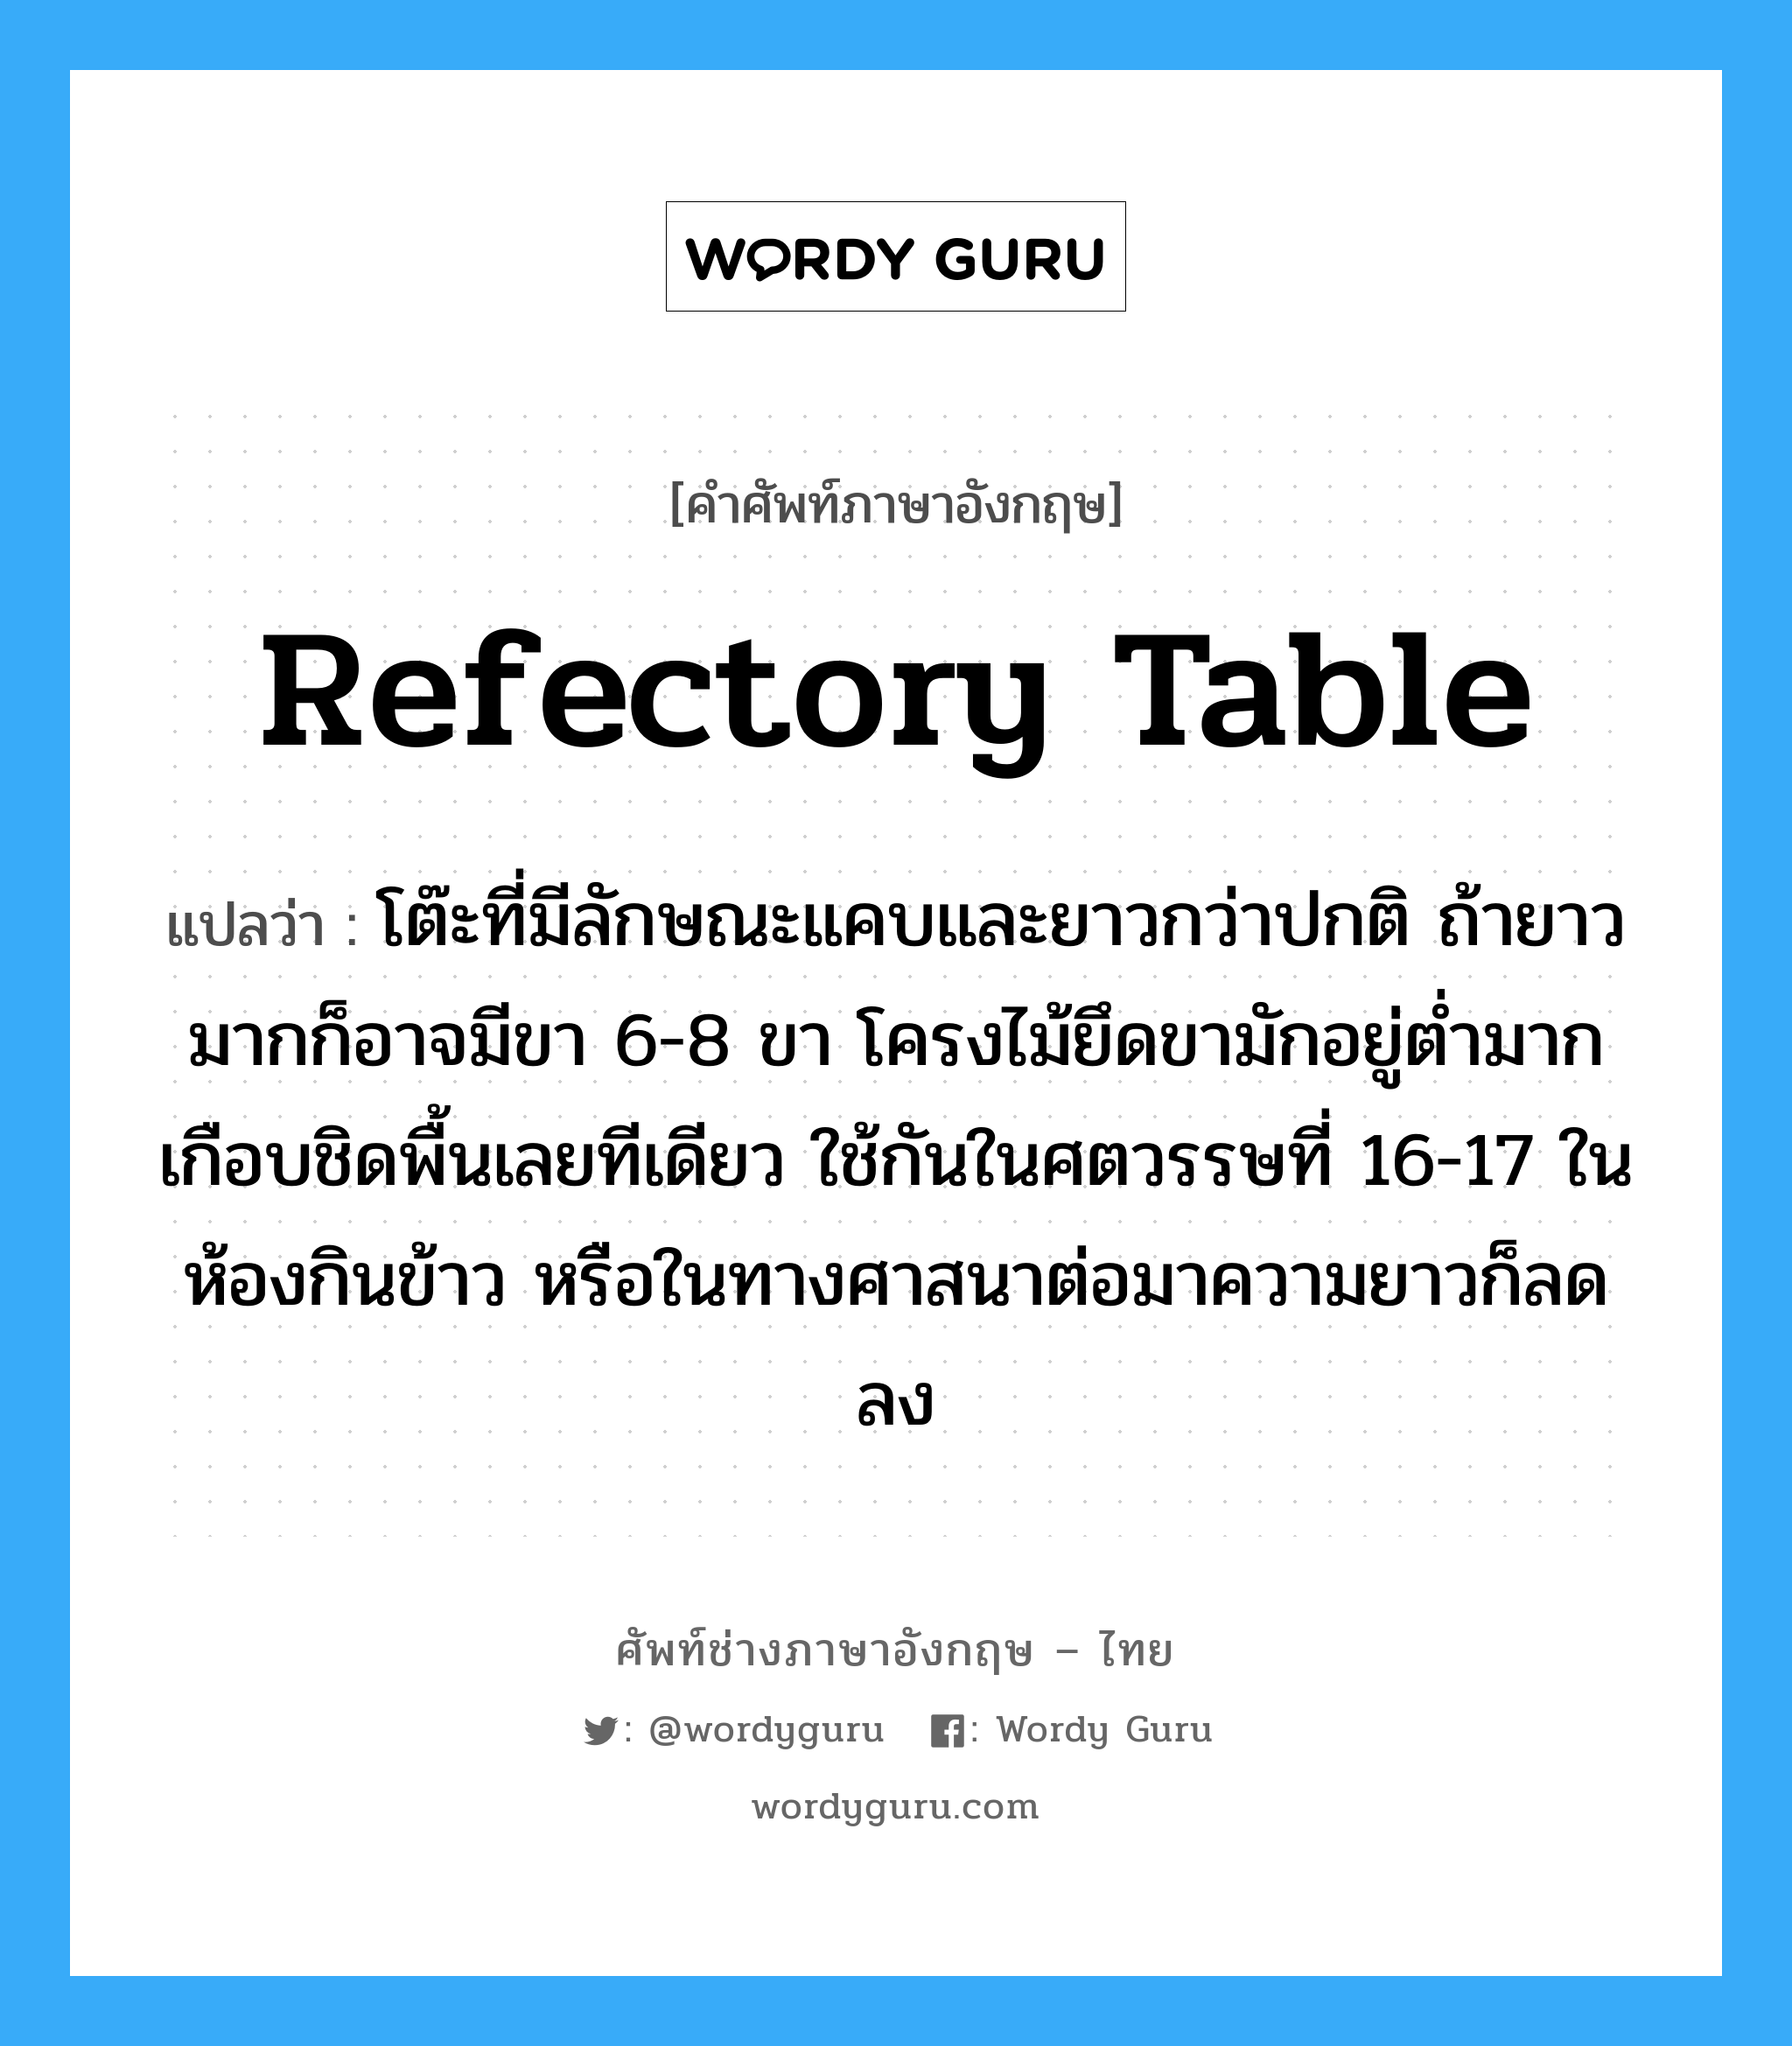 refectory table แปลว่า?, คำศัพท์ช่างภาษาอังกฤษ - ไทย refectory table คำศัพท์ภาษาอังกฤษ refectory table แปลว่า โต๊ะที่มีลักษณะแคบและยาวกว่าปกติ ถ้ายาวมากก็อาจมีขา 6-8 ขา โครงไม้ยึดขามักอยู่ต่ำมากเกือบชิดพื้นเลยทีเดียว ใช้กันในศตวรรษที่ 16-17 ในห้องกินข้าว หรือในทางศาสนาต่อมาความยาวก็ลดลง